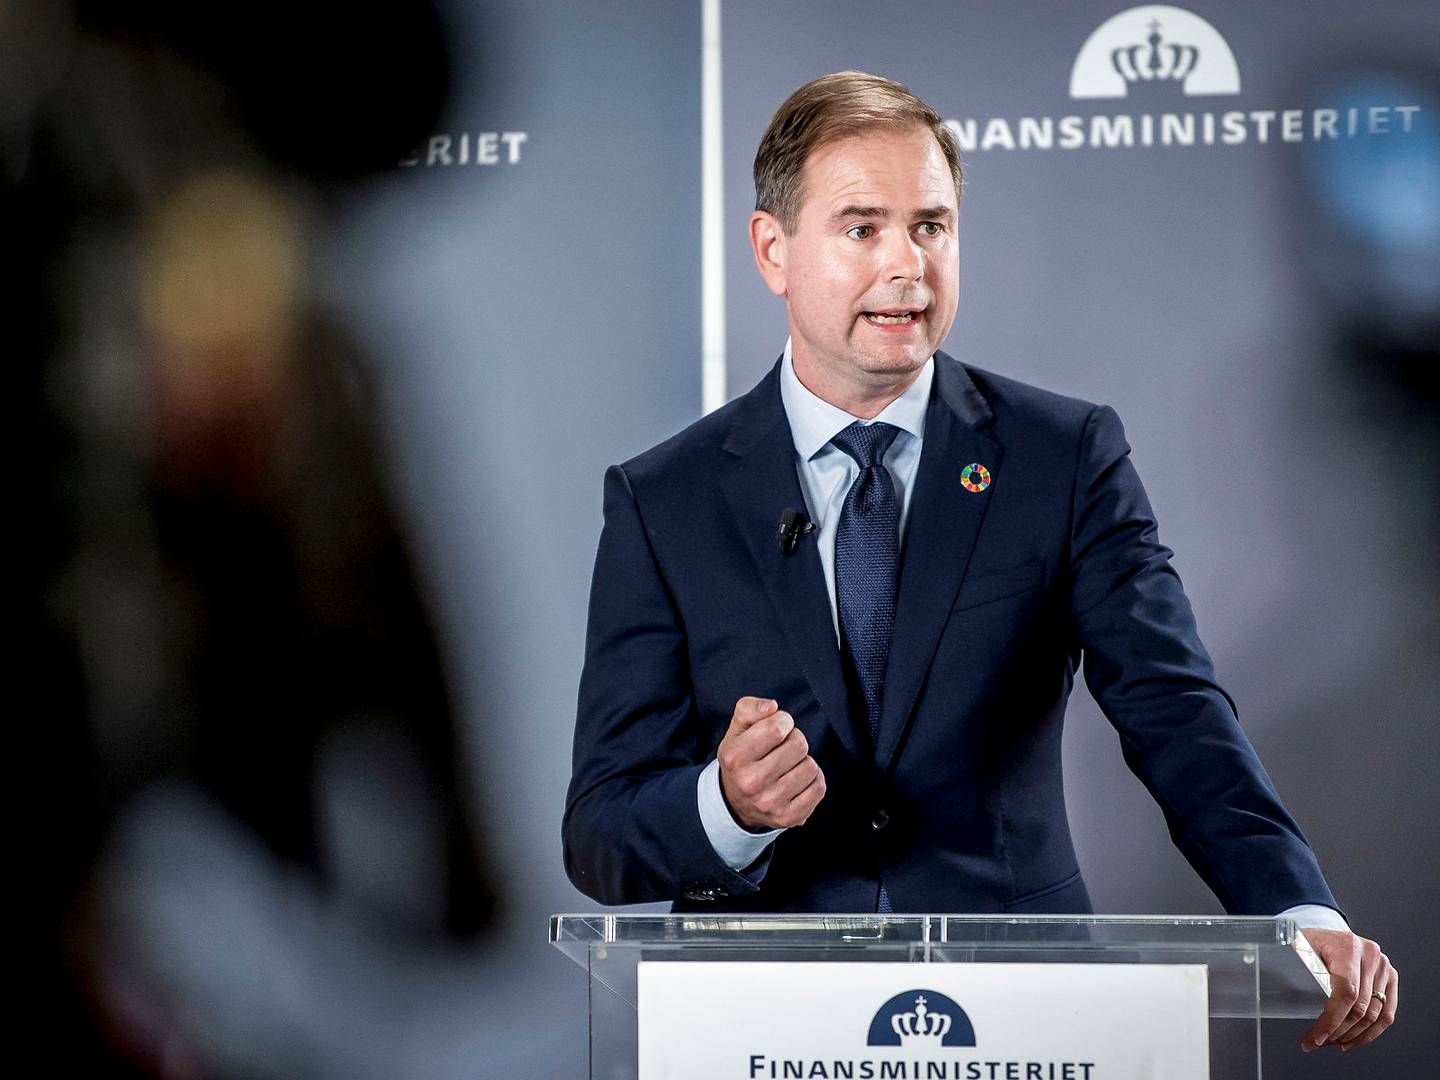 Finansminister Nicolai Wammen har planer om at spare på statens forbruger af konsulenter. | Foto: Mads Claus Rasmussen/Ritzau Scanpix